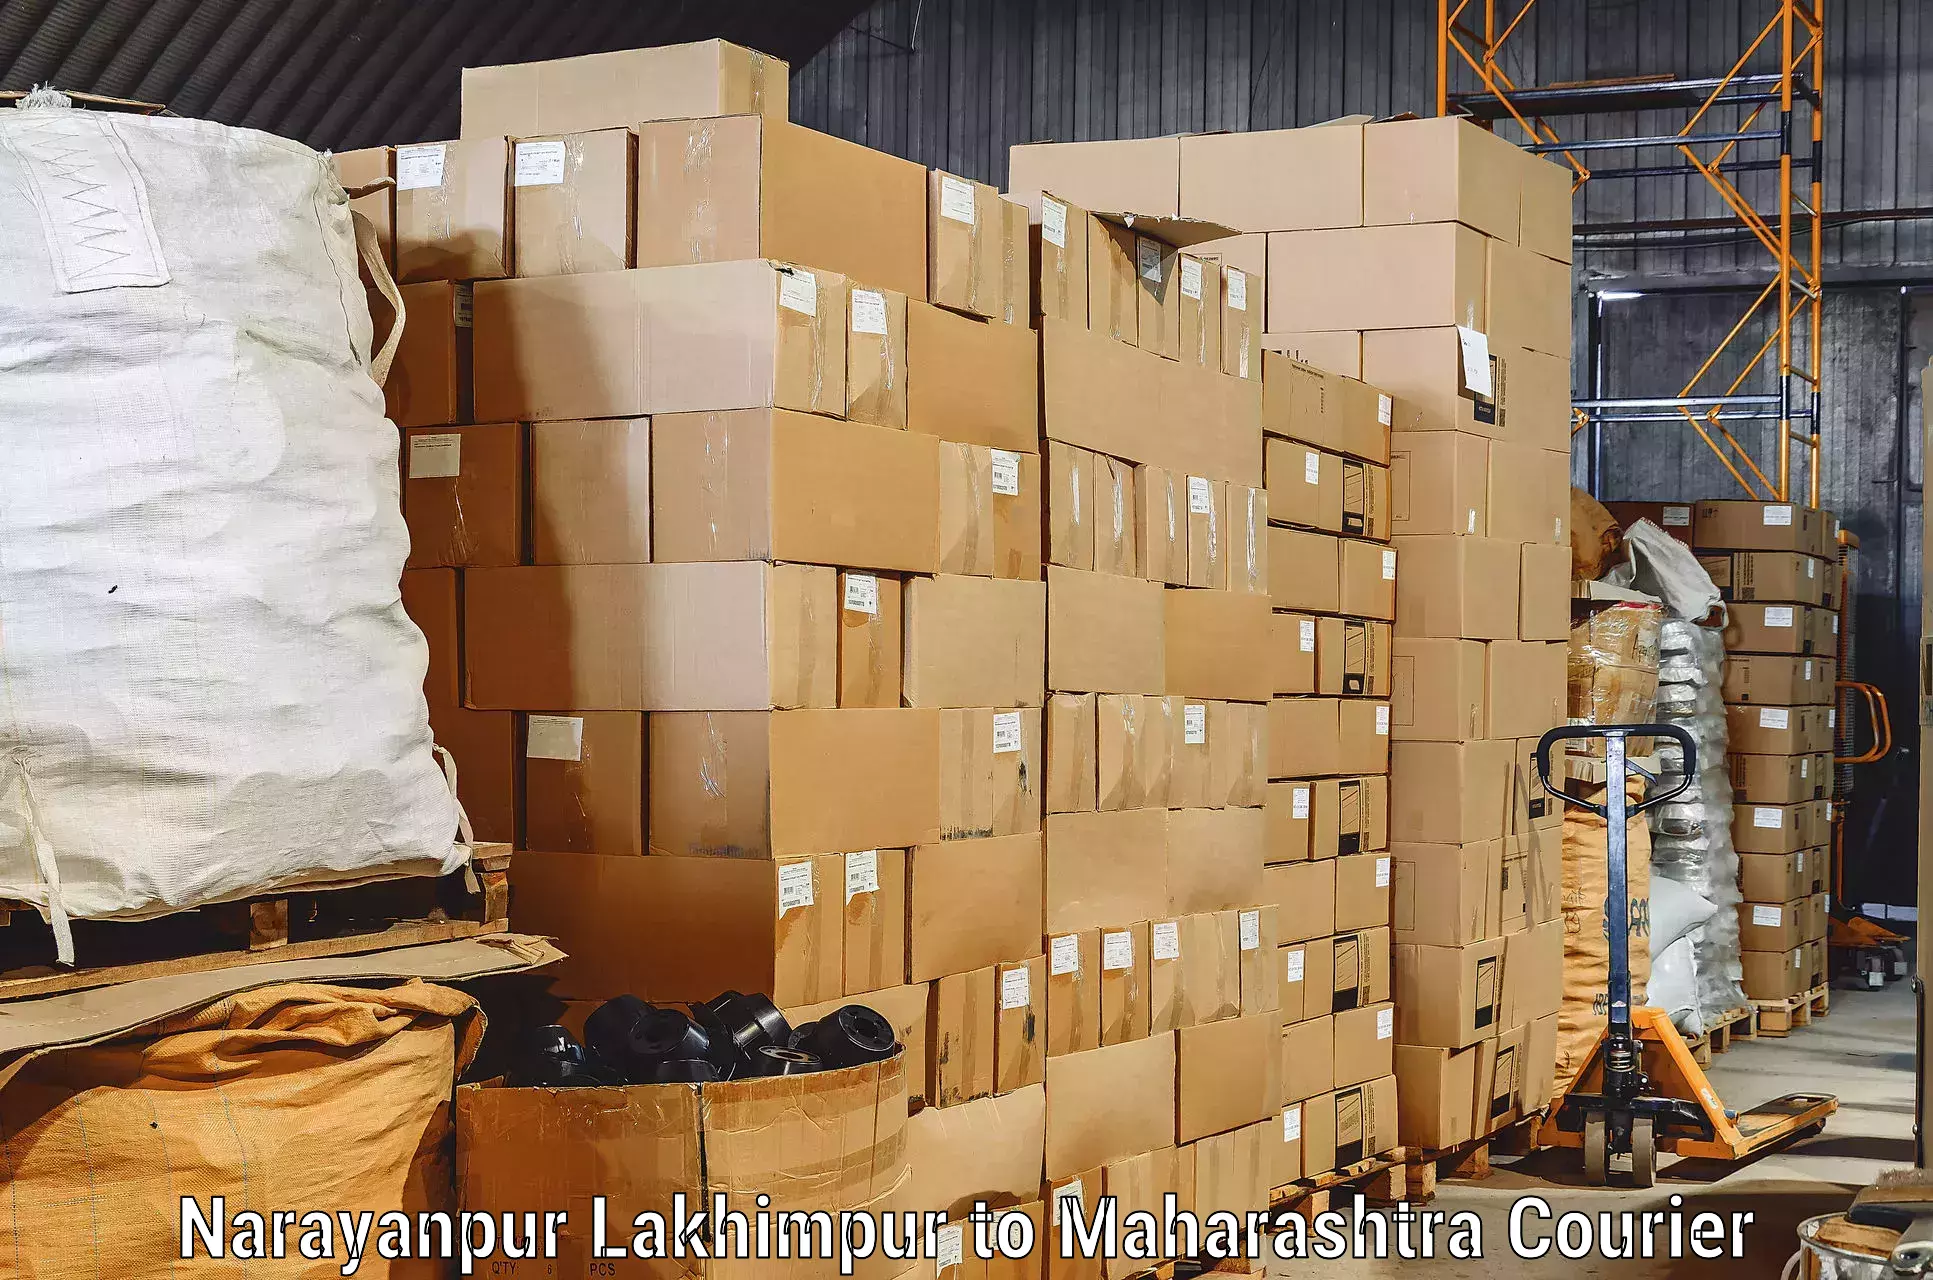 Moving and packing experts Narayanpur Lakhimpur to Bhusawal